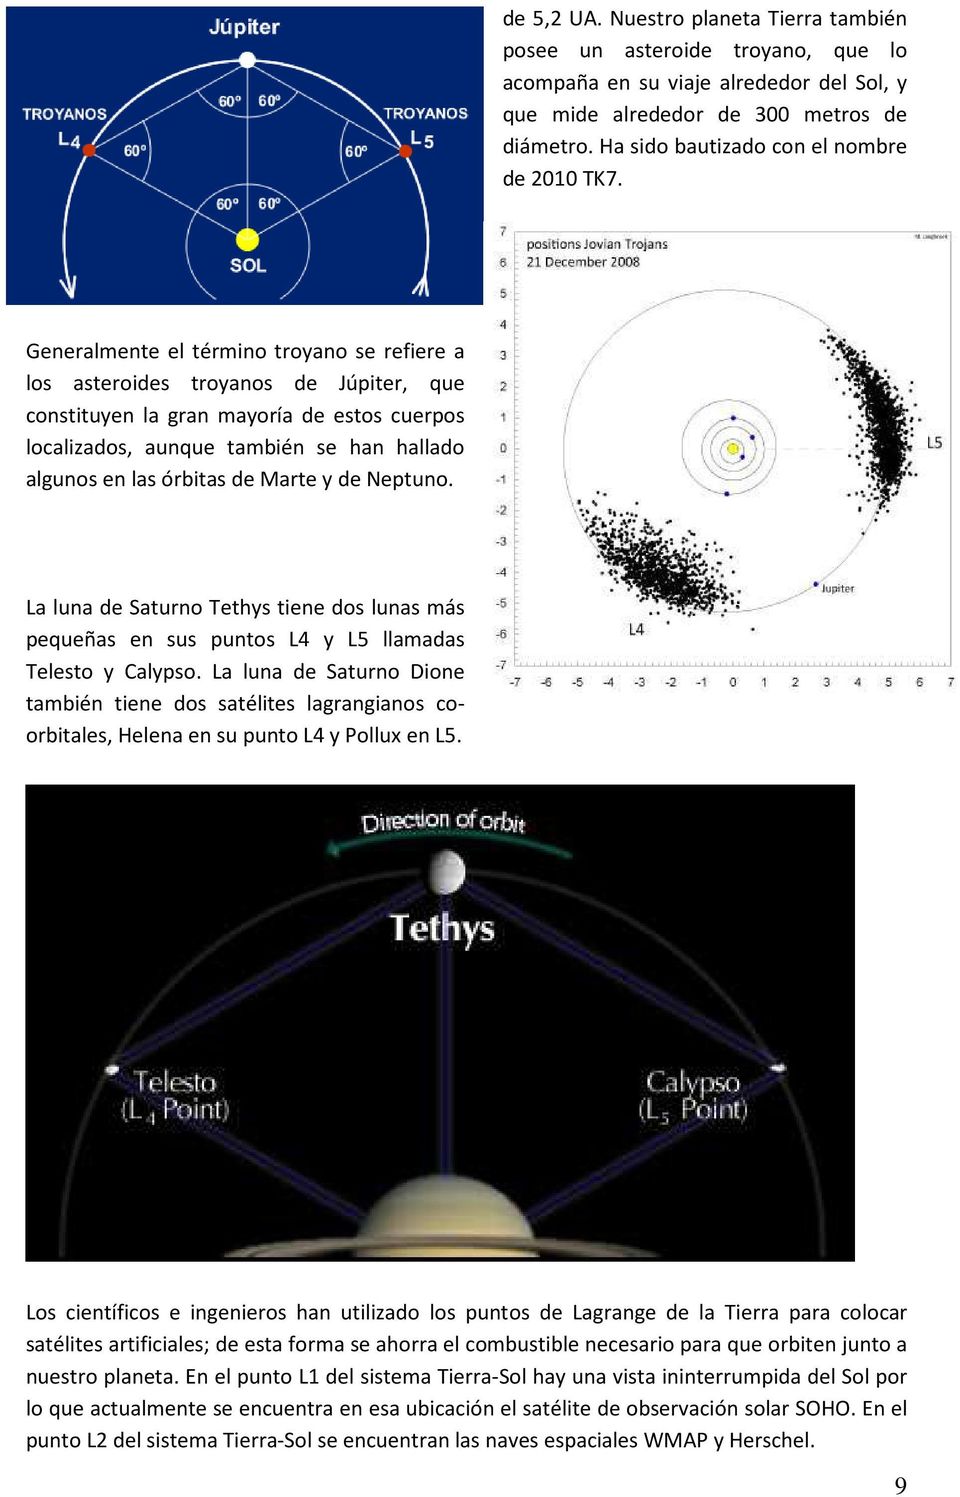 Generalmente el término troyano se refiere a los asteroides troyanos de Júpiter, que constituyen la gran mayoría de estos cuerpos localizados, aunque también se han hallado algunos en las órbitas de